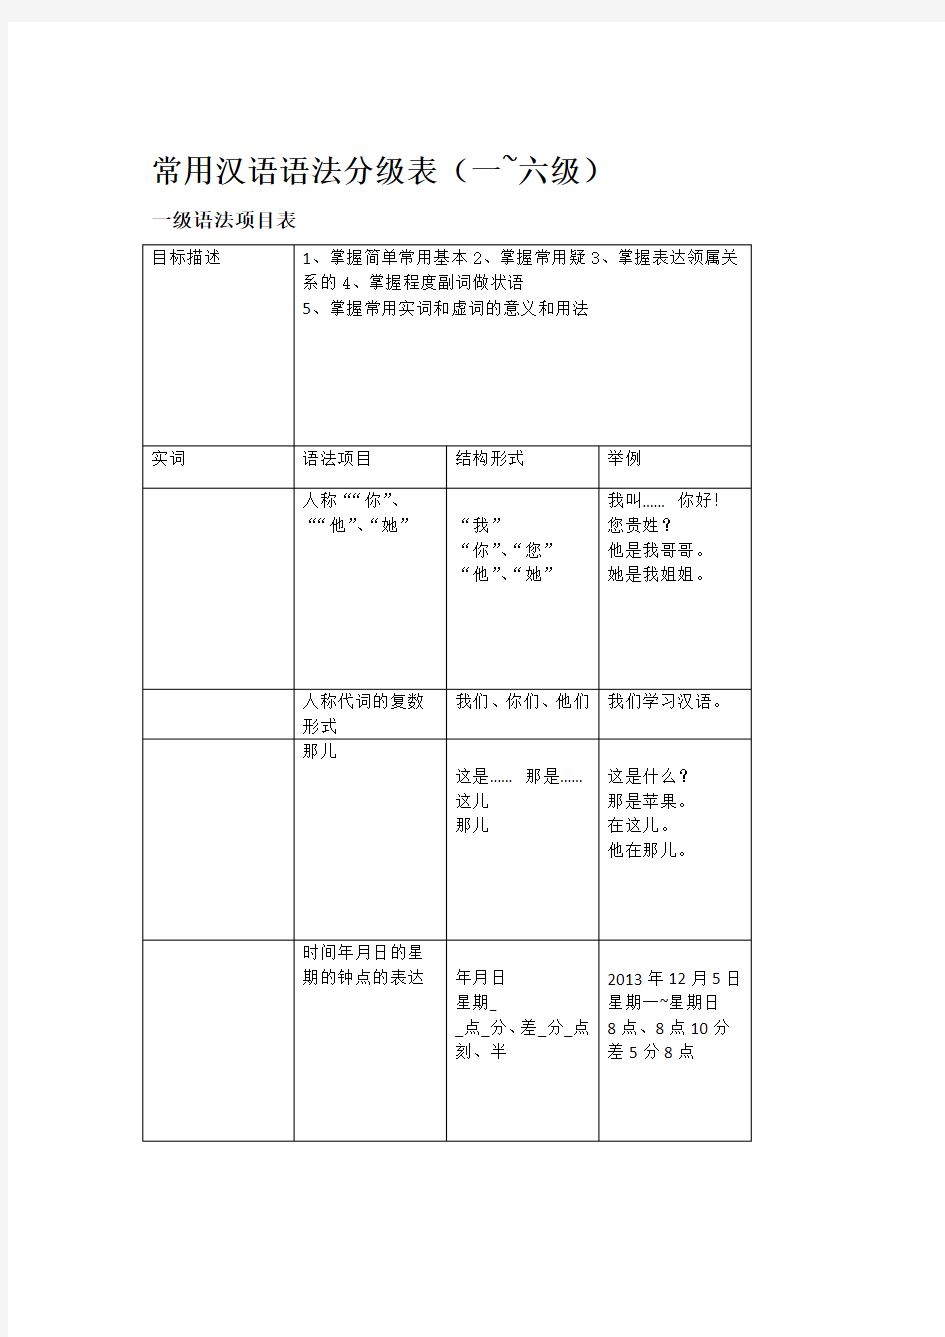 常用汉语语法分级表修订版